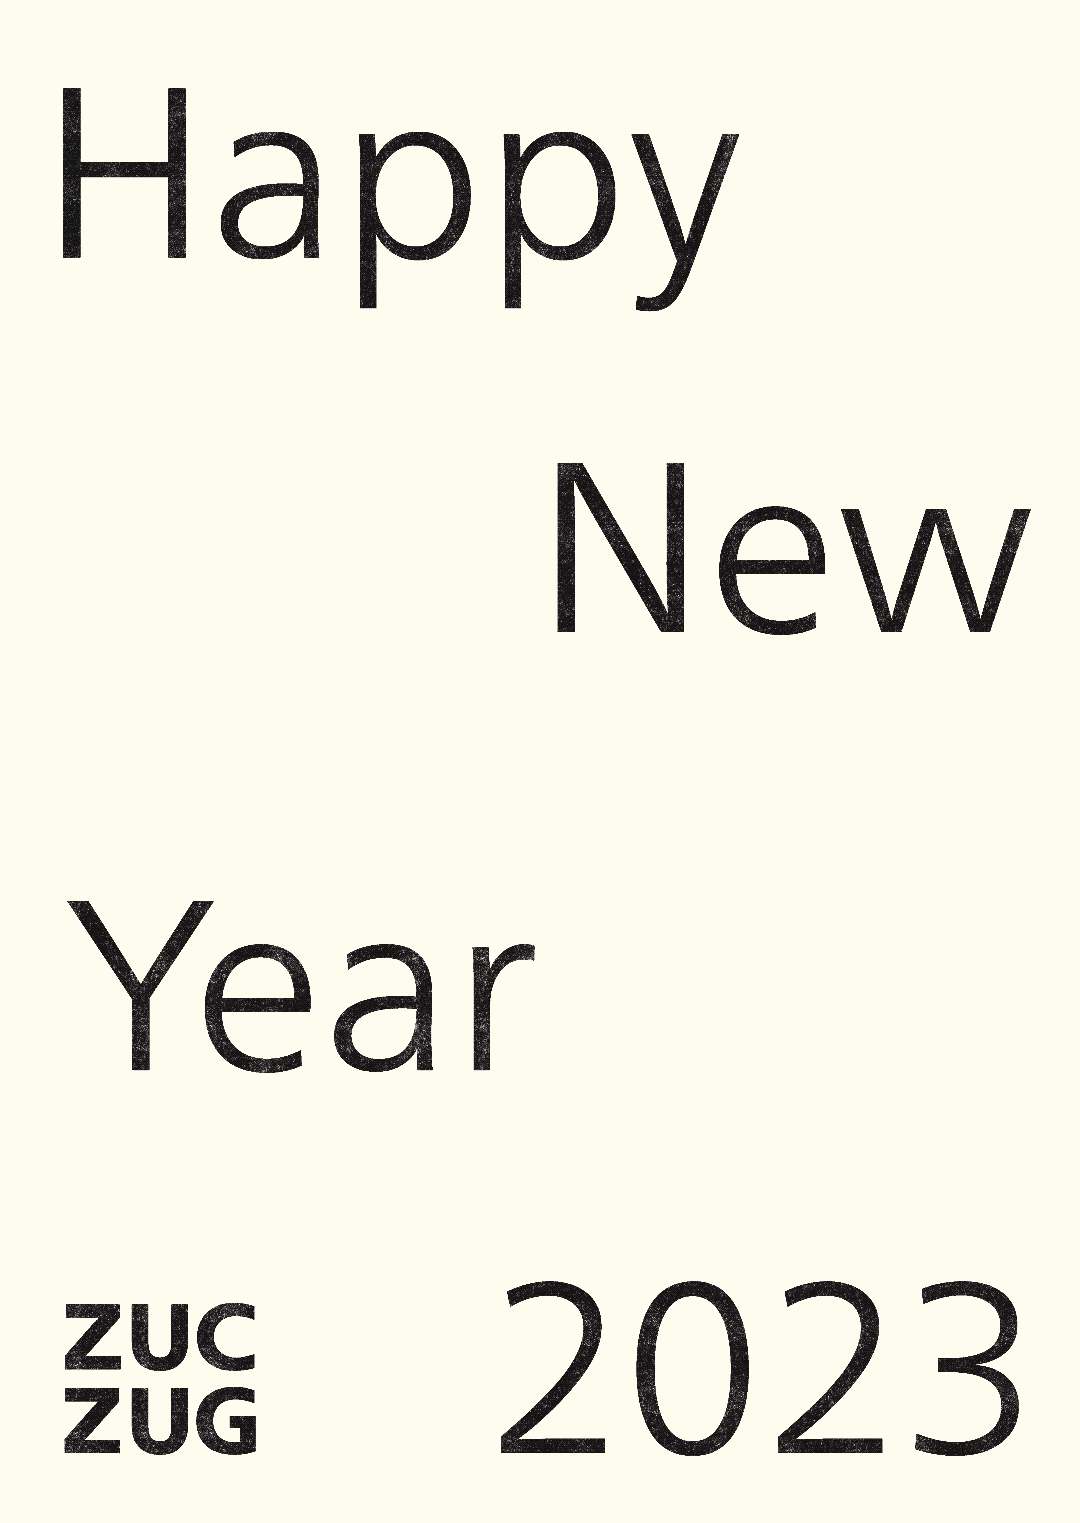 ZUCZUG / Happy New Year